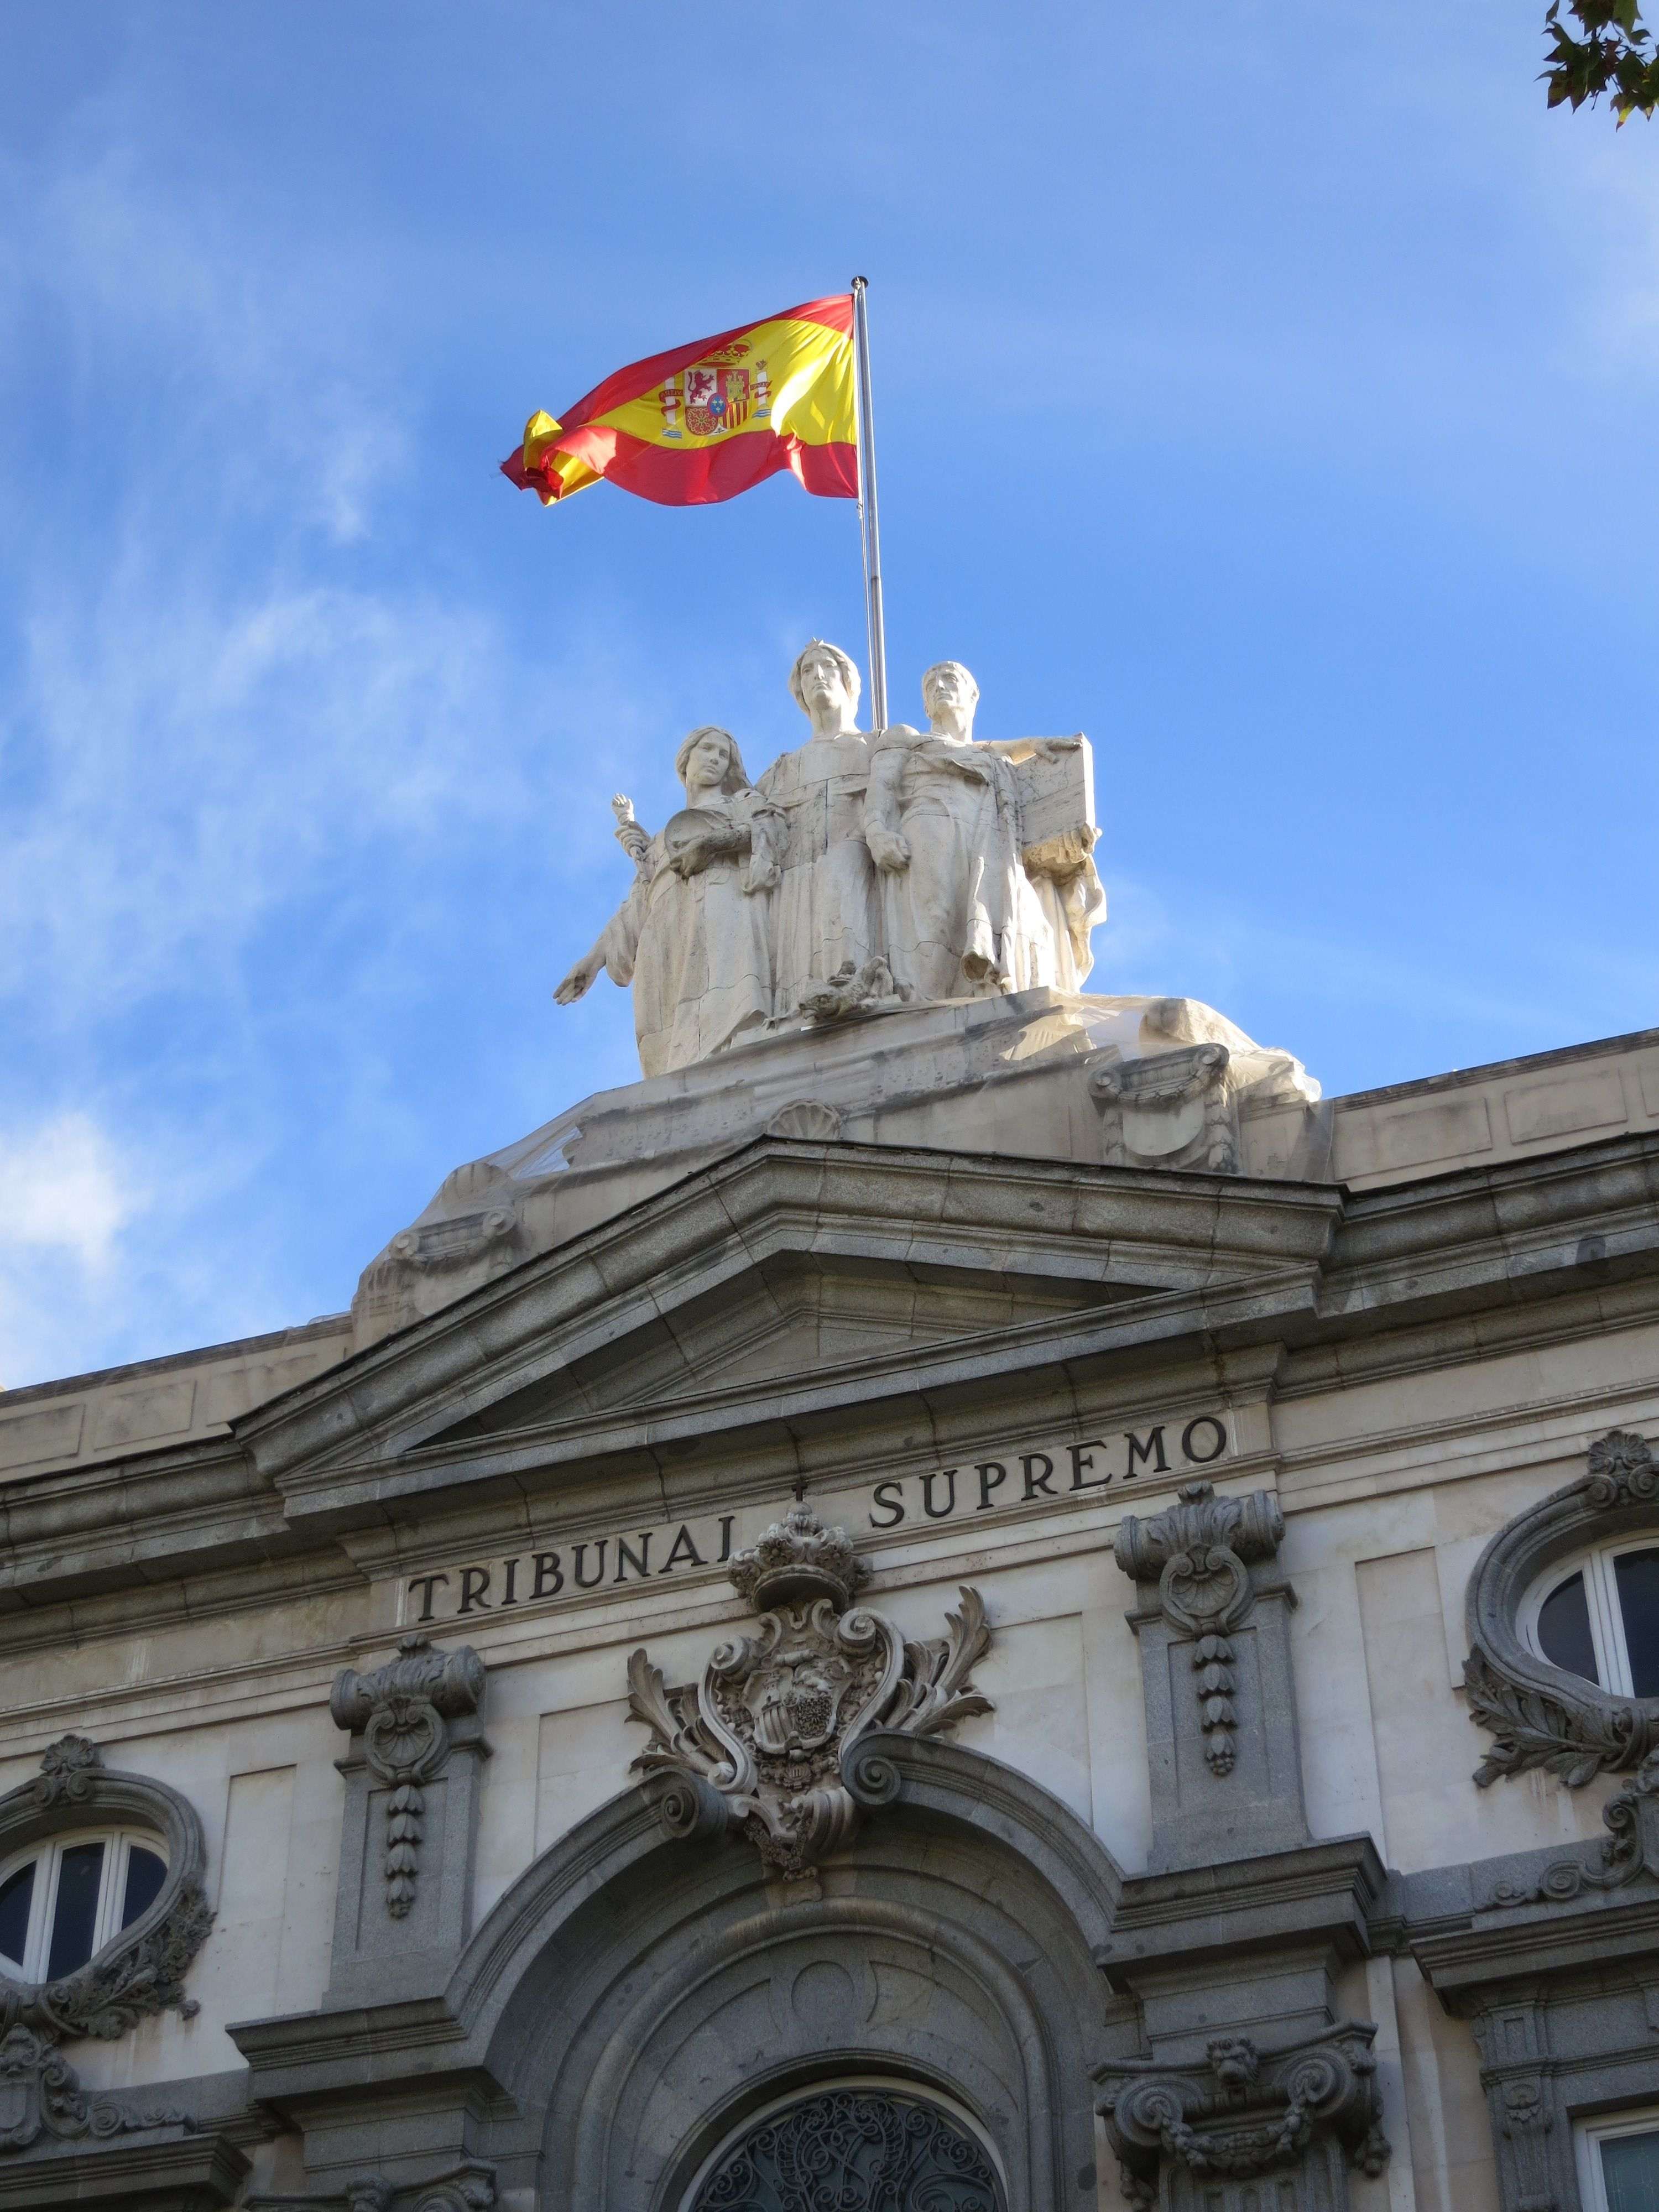 La justicia española queda expuesta al mundo